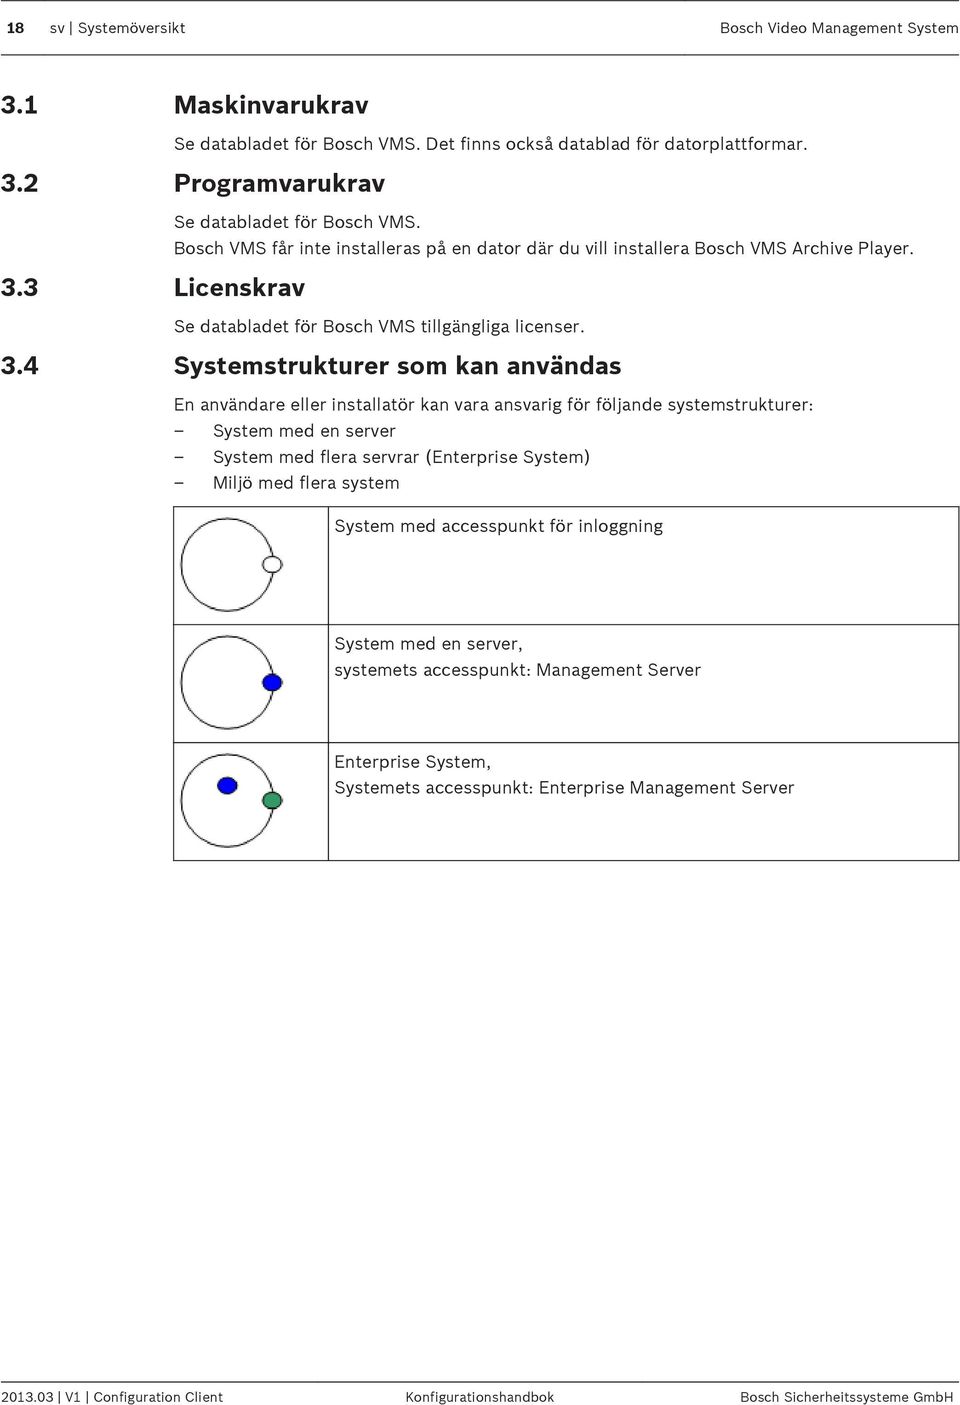 3 Licenskrav Se databladet för Bosch VMS tillgängliga licenser. 3.